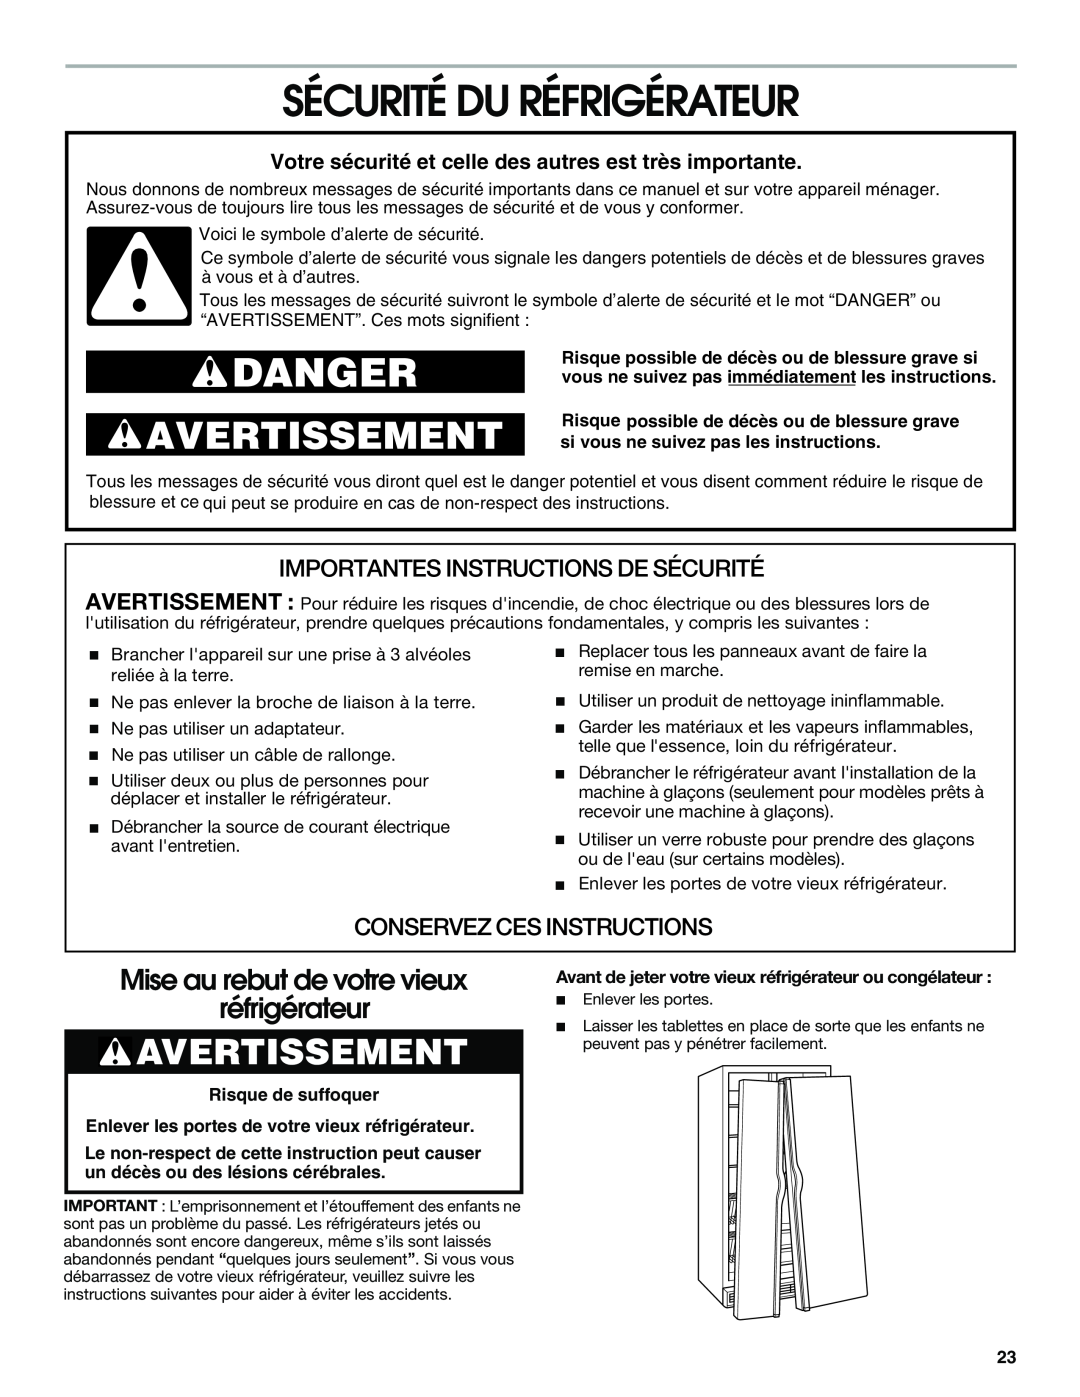 Whirlpool RS22AQXGN03 manual Sécurité Du Réfrigérateur, Avertissement, Mise au rebut de votre vieux réfrigérateur, Danger 